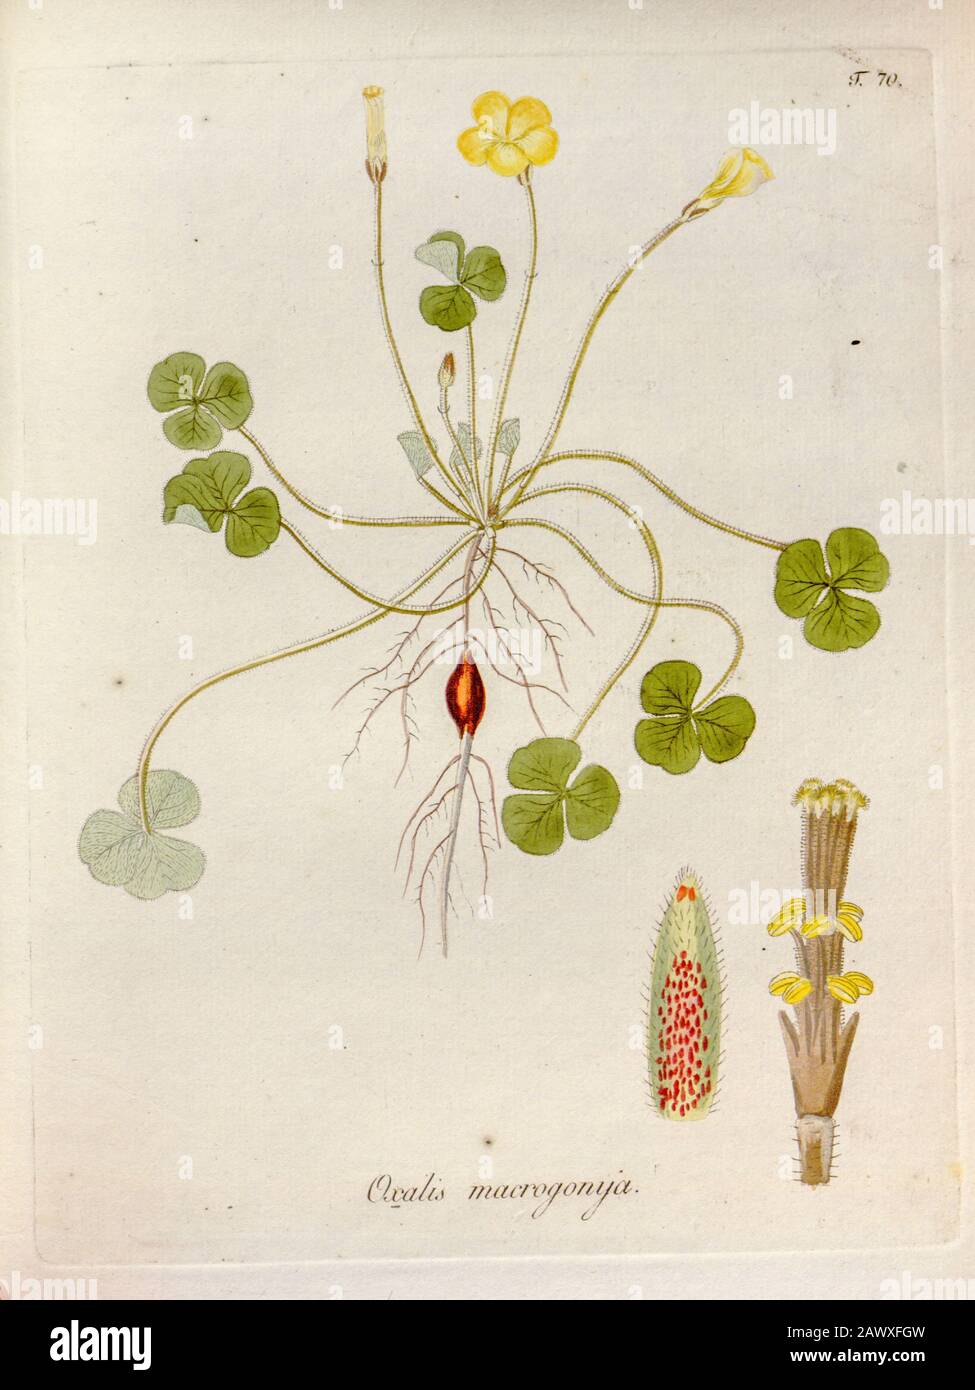 Wood sorrel (Oxalis macrogonya). Illustration from 'Oxalis Monographia iconibus illustrata' by Nikolaus Joseph Jacquin (1797-1798). published 1794 Stock Photo